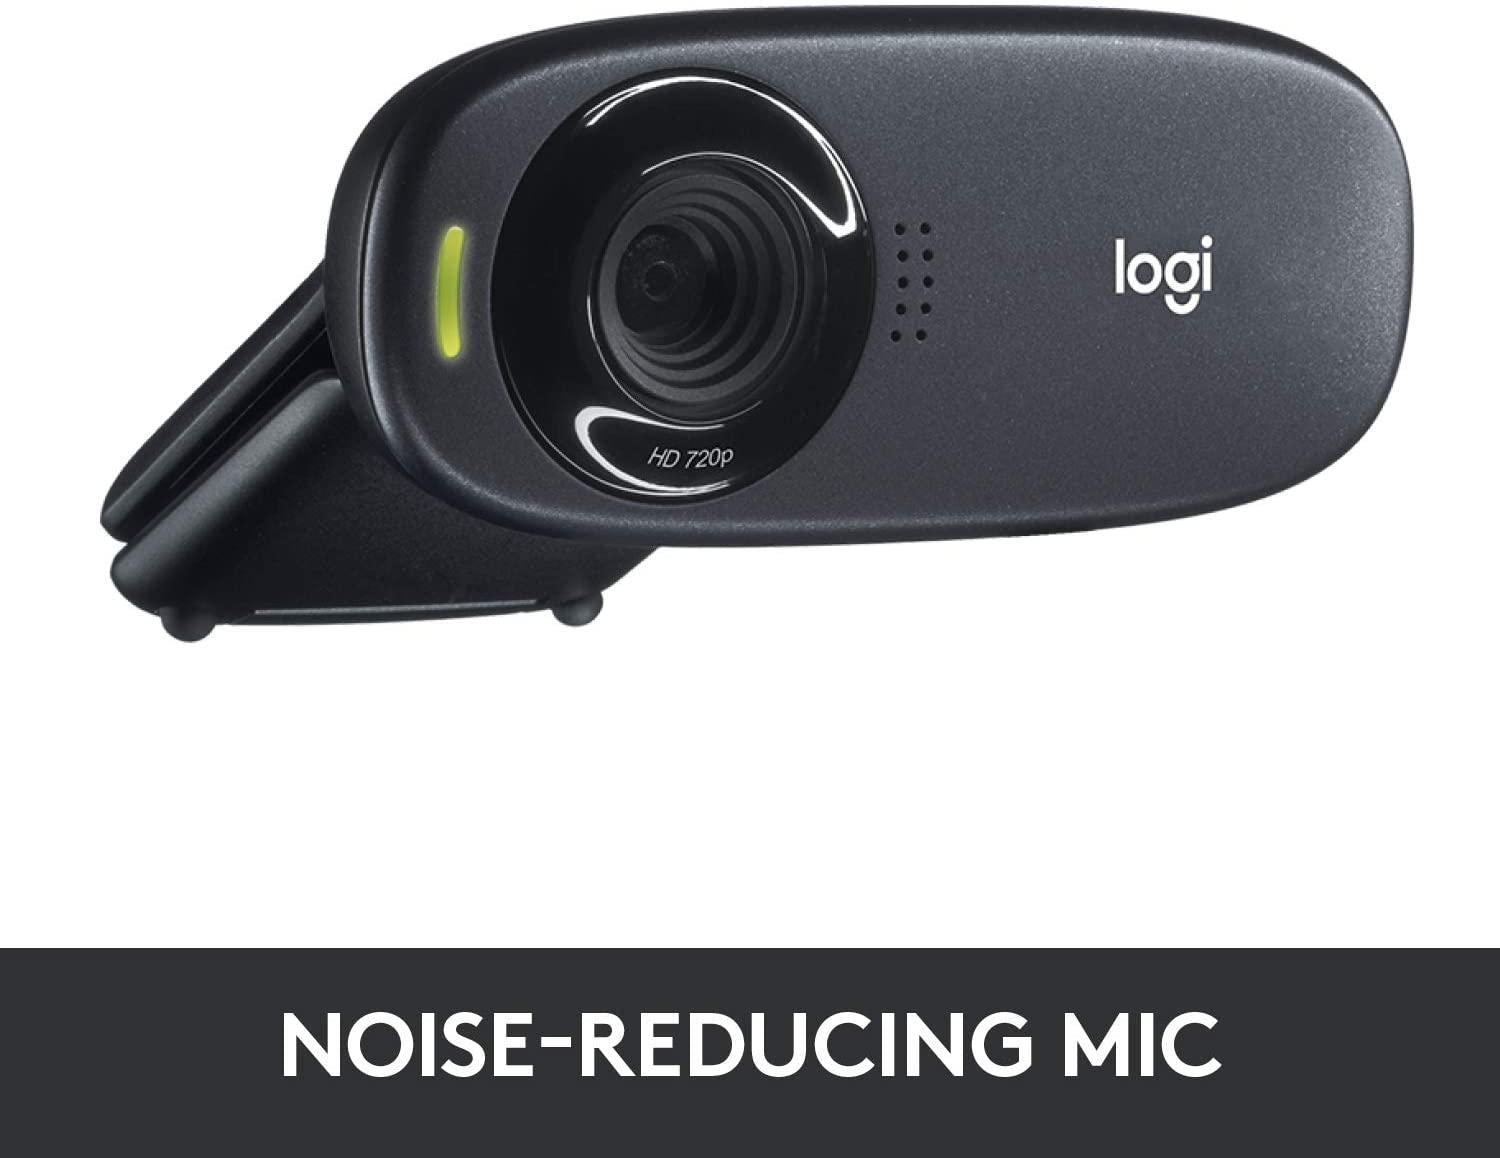 Webcam Logitech C310 ad alta risoluzione HD 720p/30fps